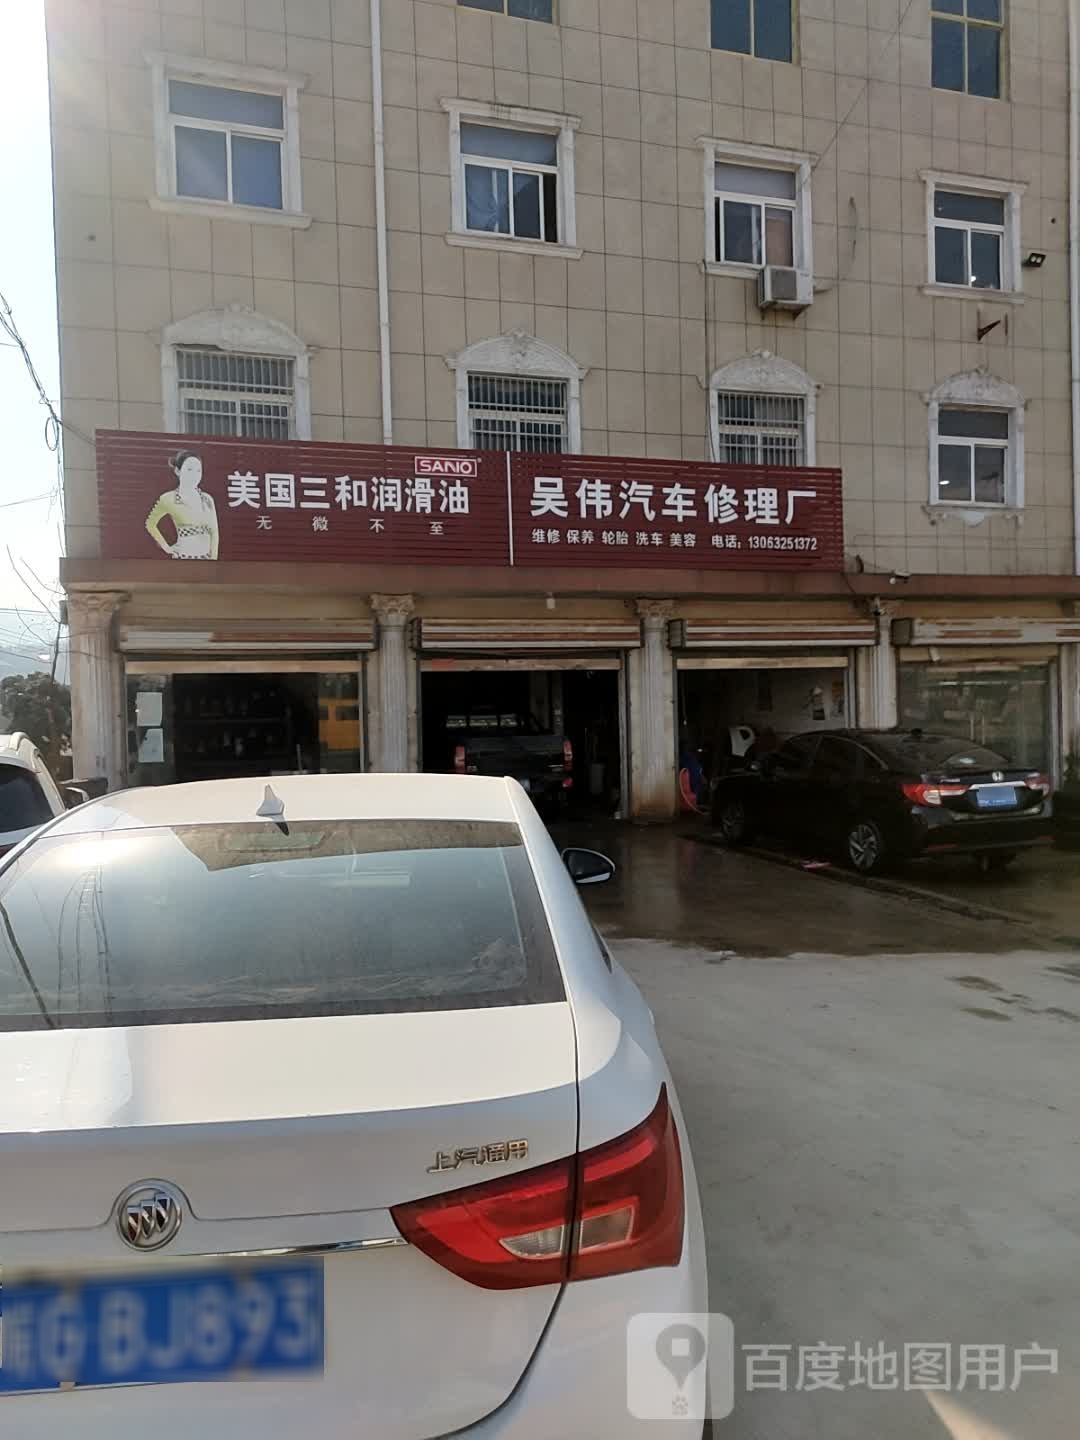 吴伟汽车修理厂